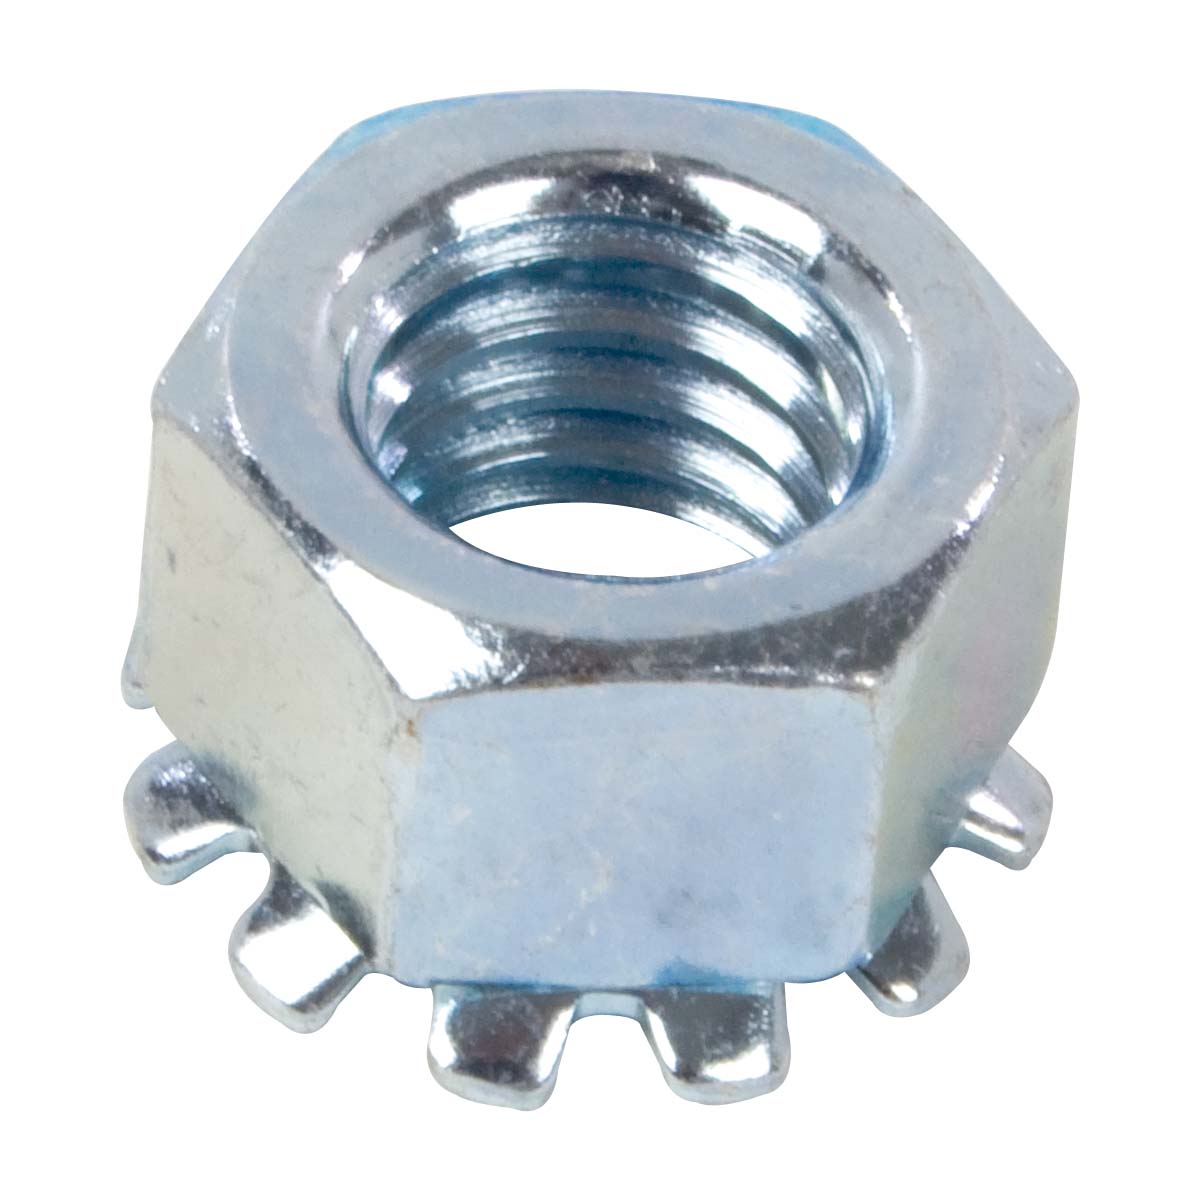 10-32 Keps Nut Zinc Plated Steel 3/8” Flats K-Lock PKG of 100 